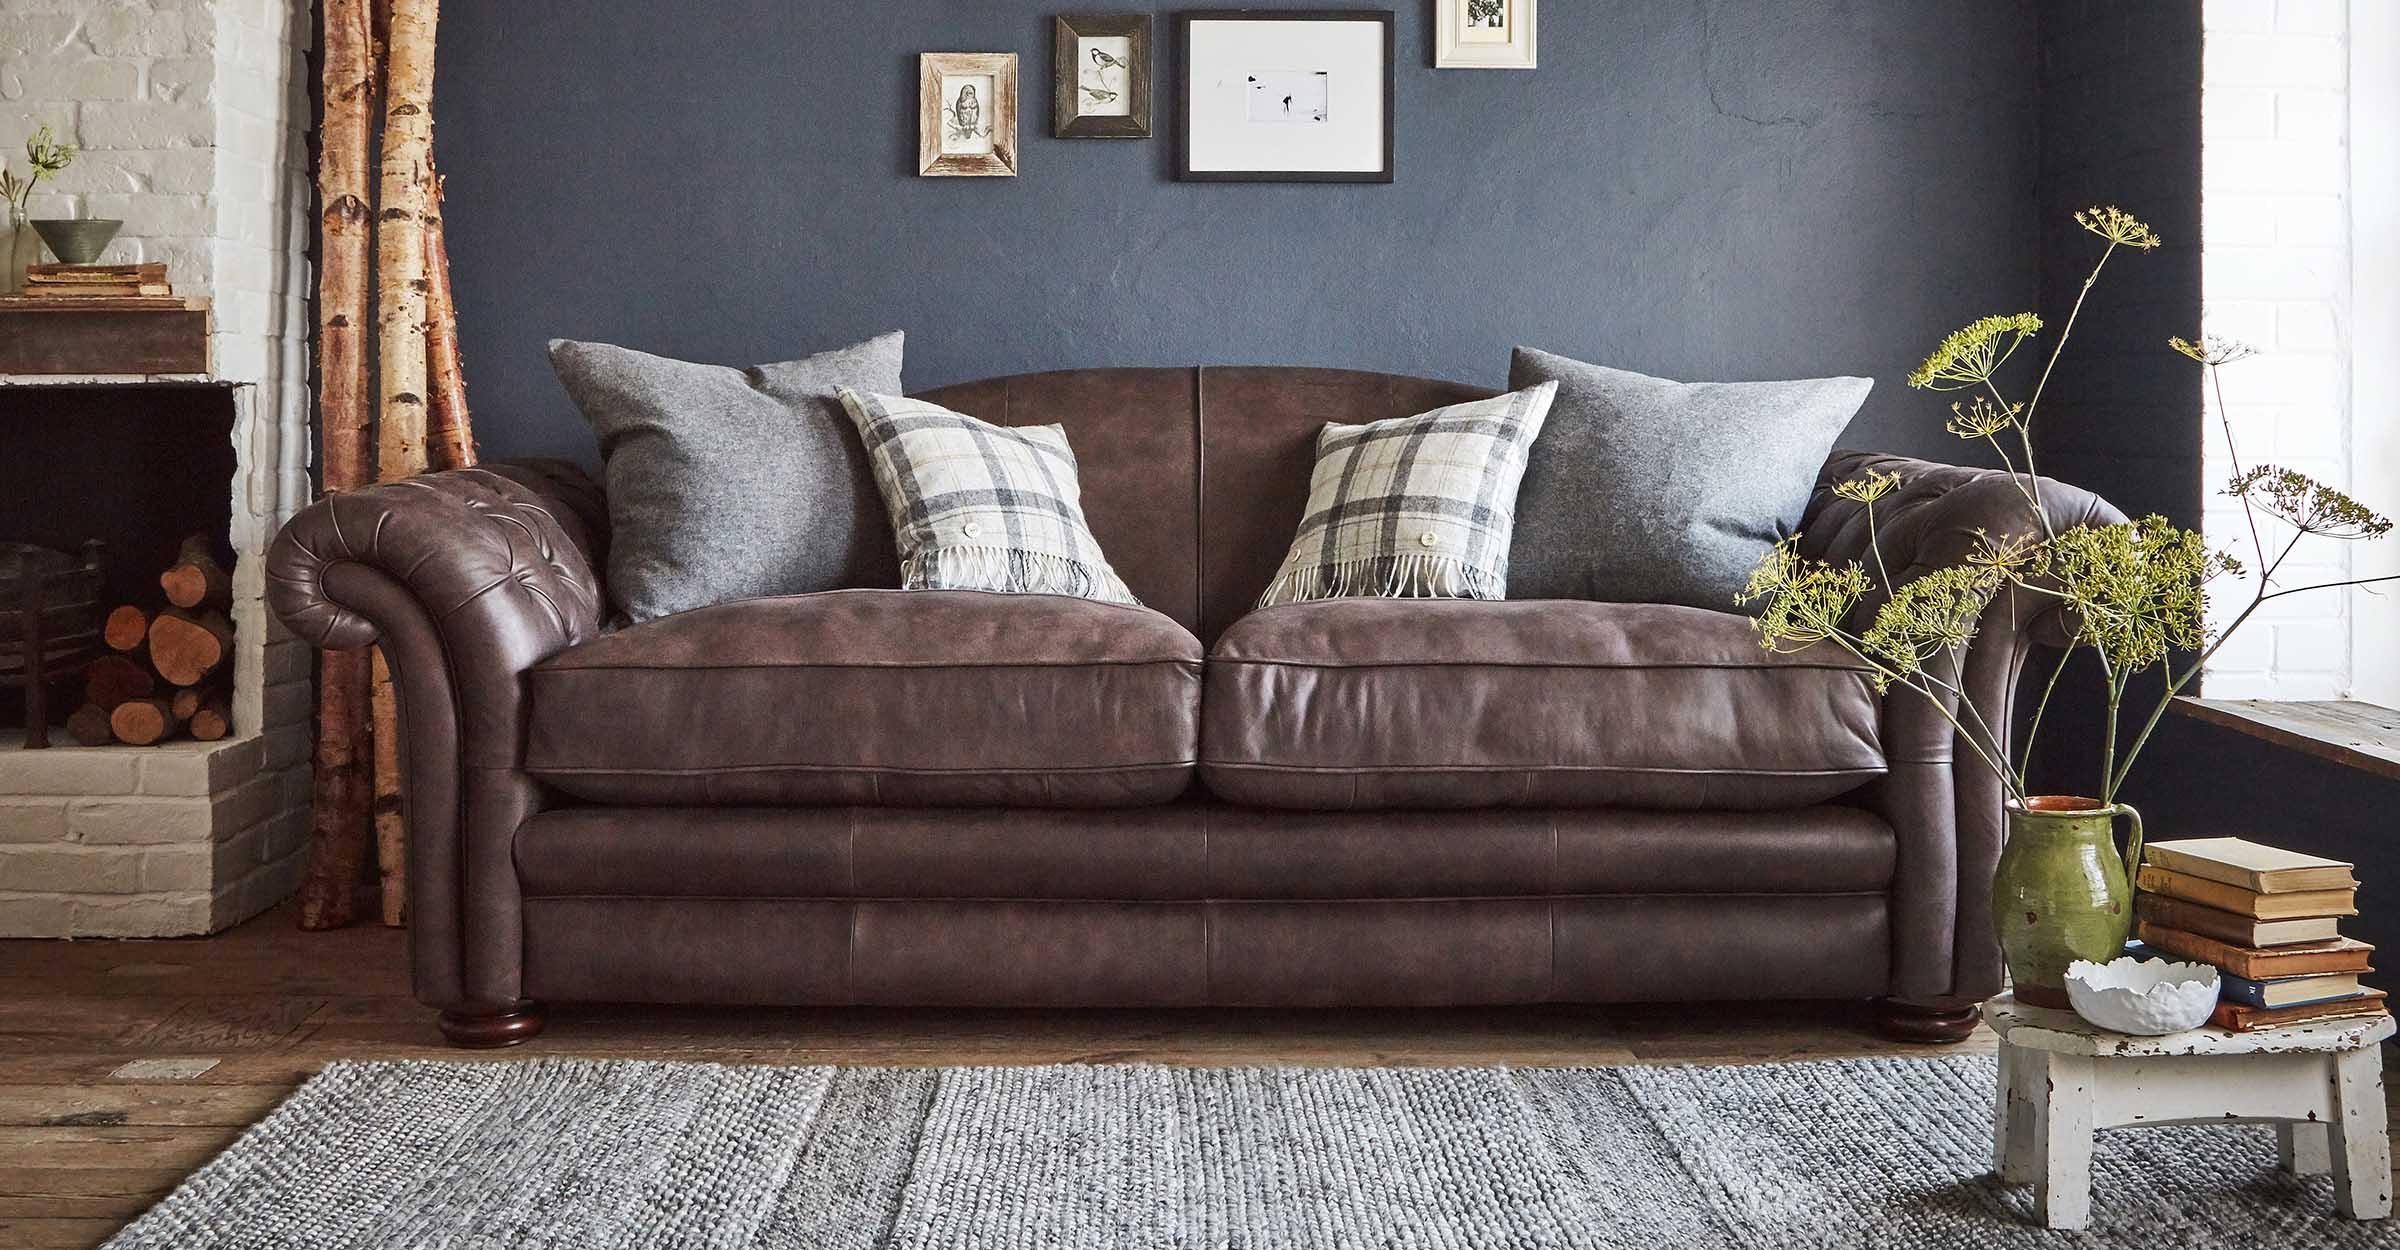 Brown Sofas Dfs, What Colour Cushions On Brown Sofa